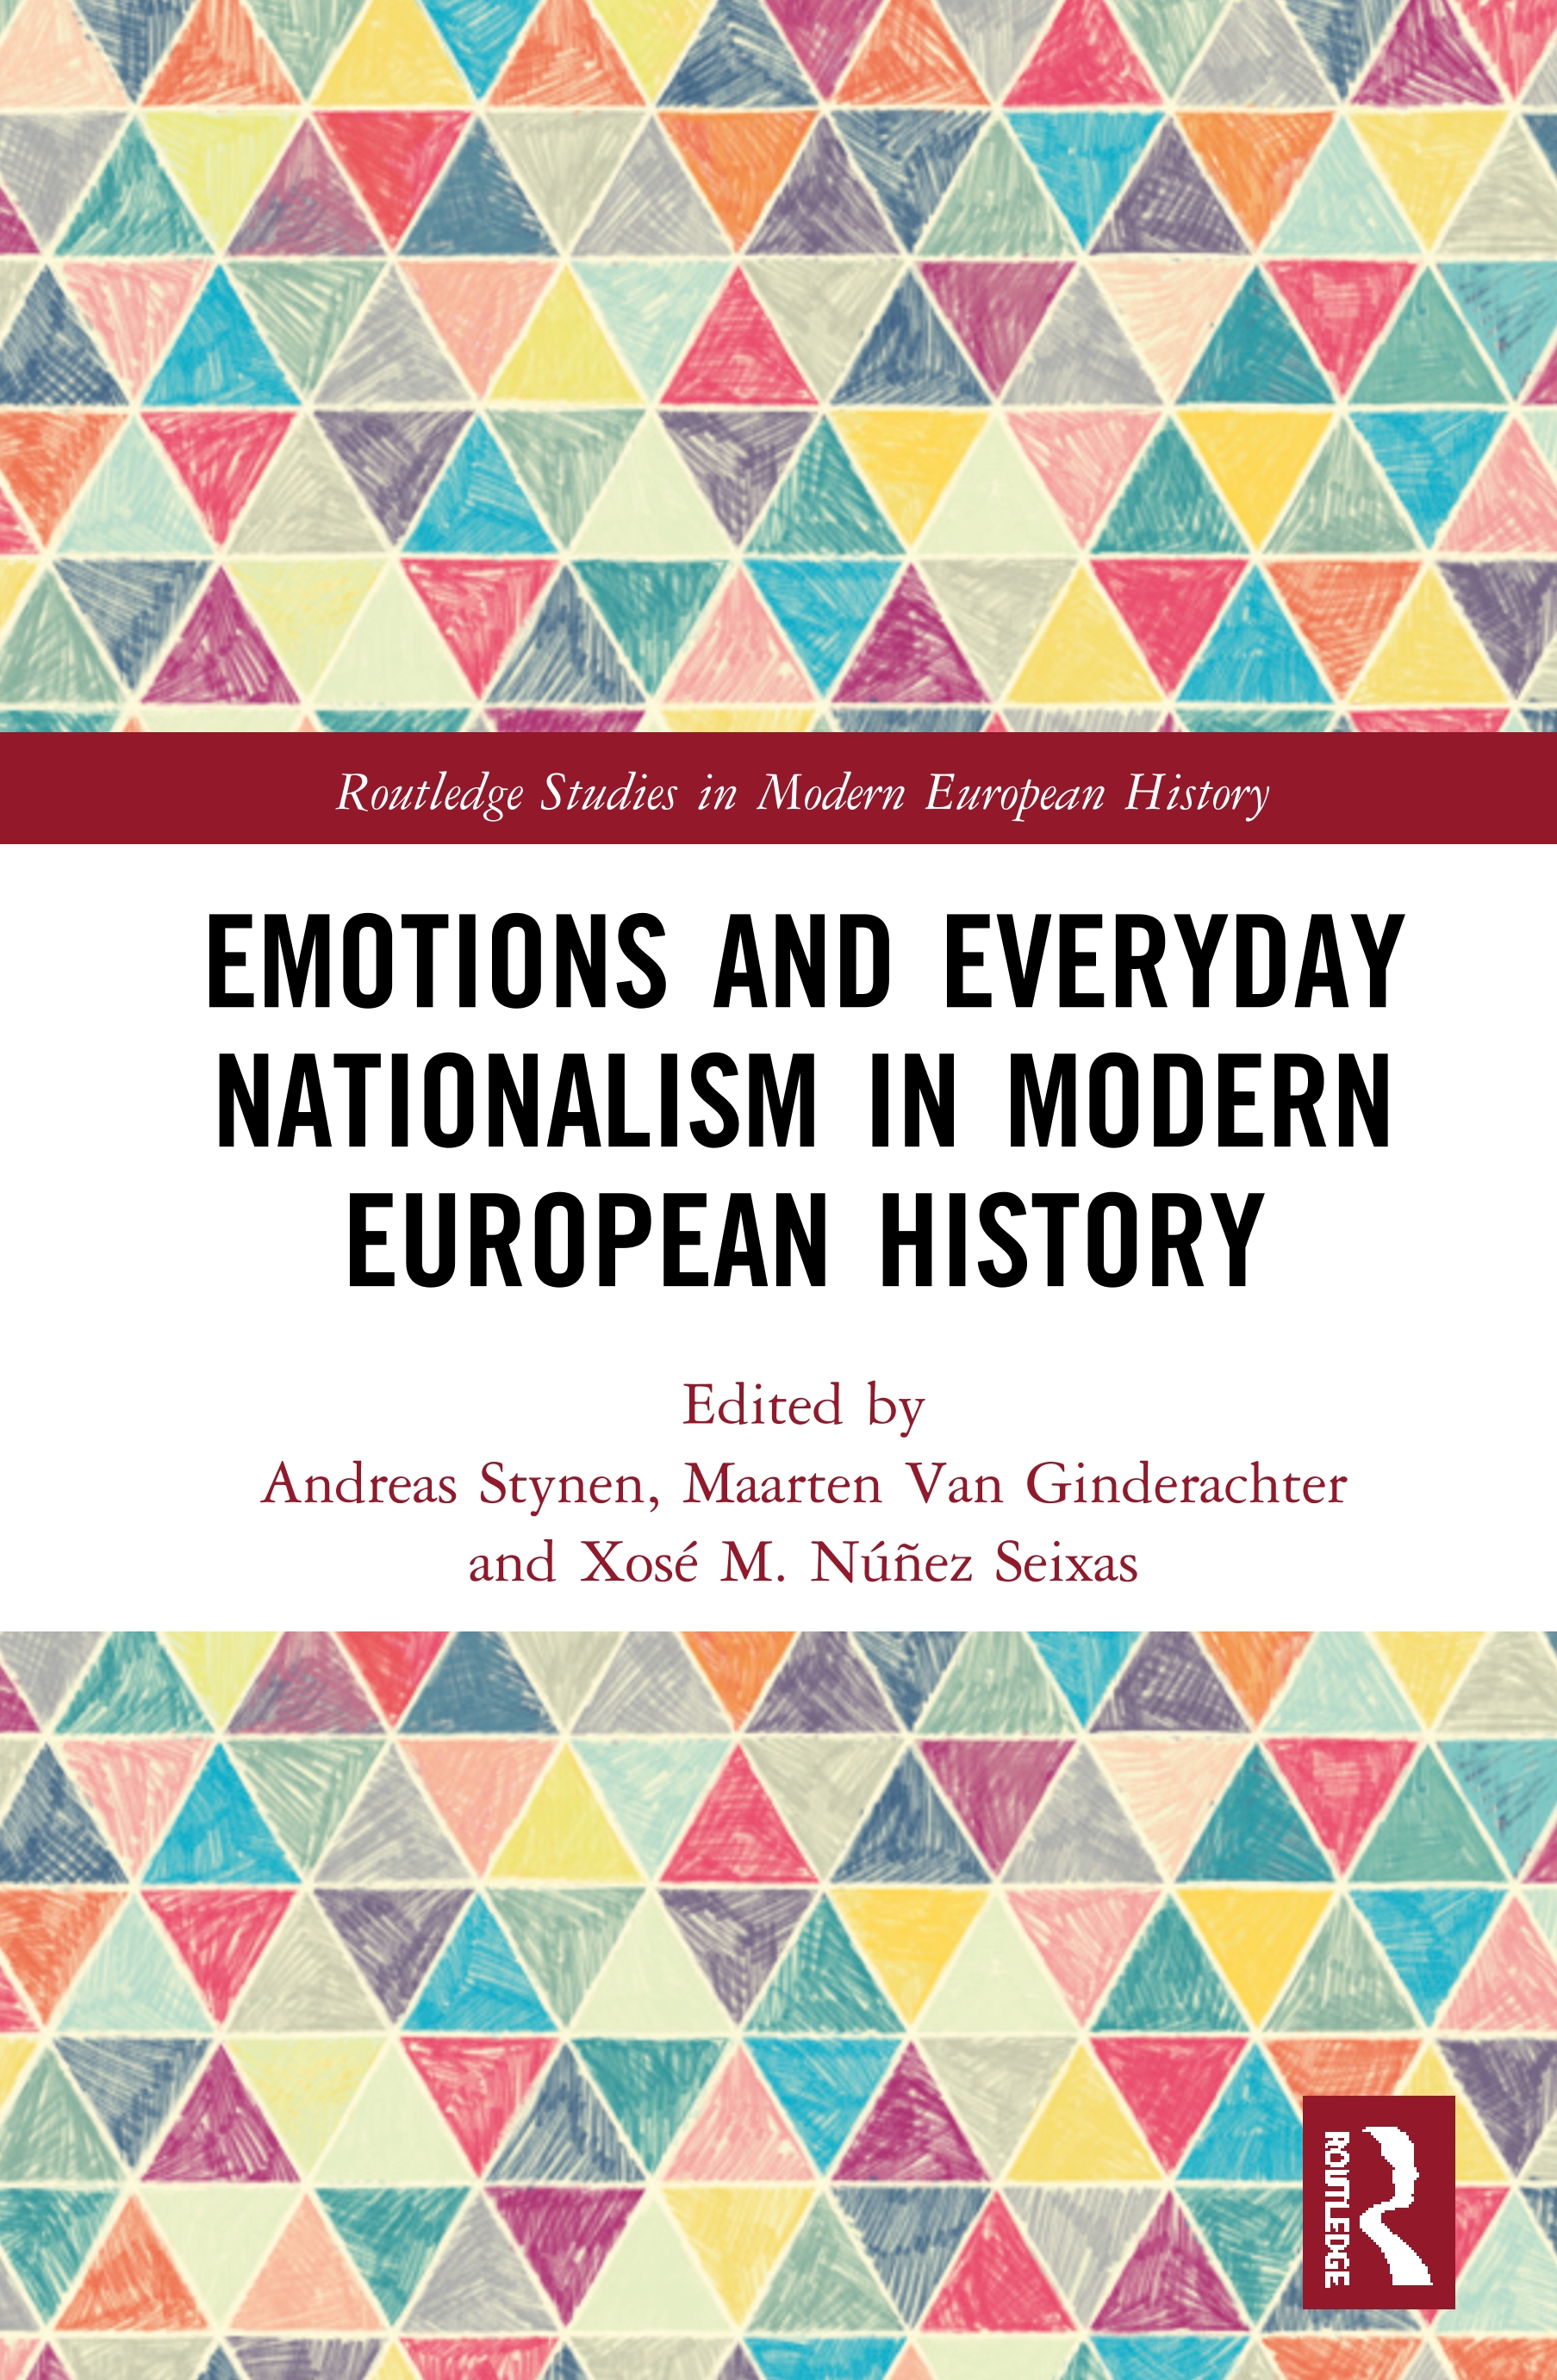 Imagen de portada del libro Emotions and everyday nationalism in modern European history